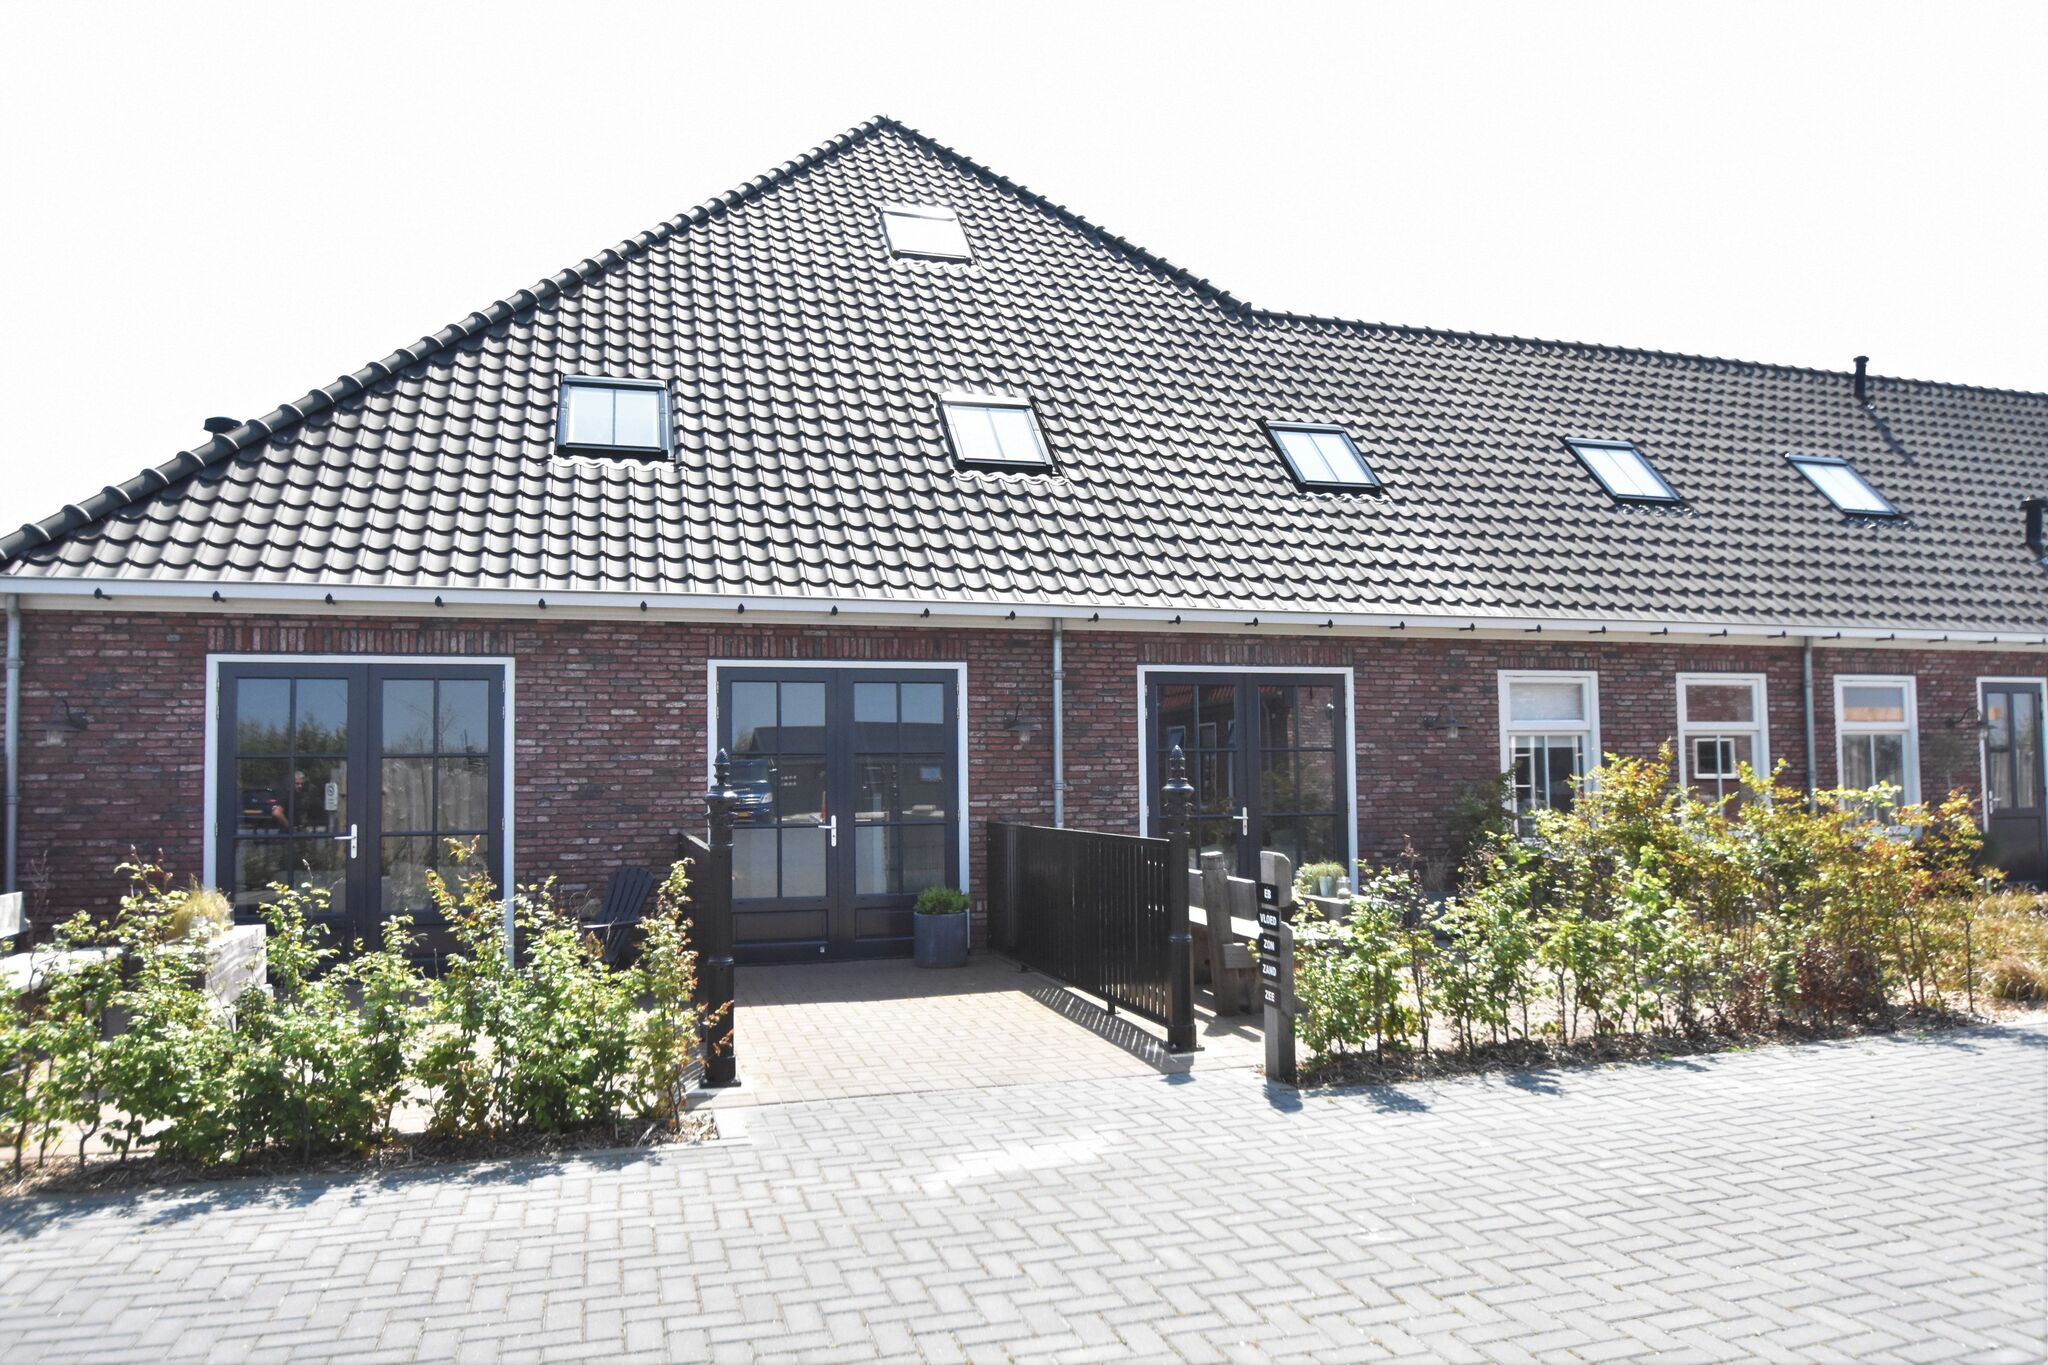 Appartement Hazenborgh nabij de kust inCallantsoog